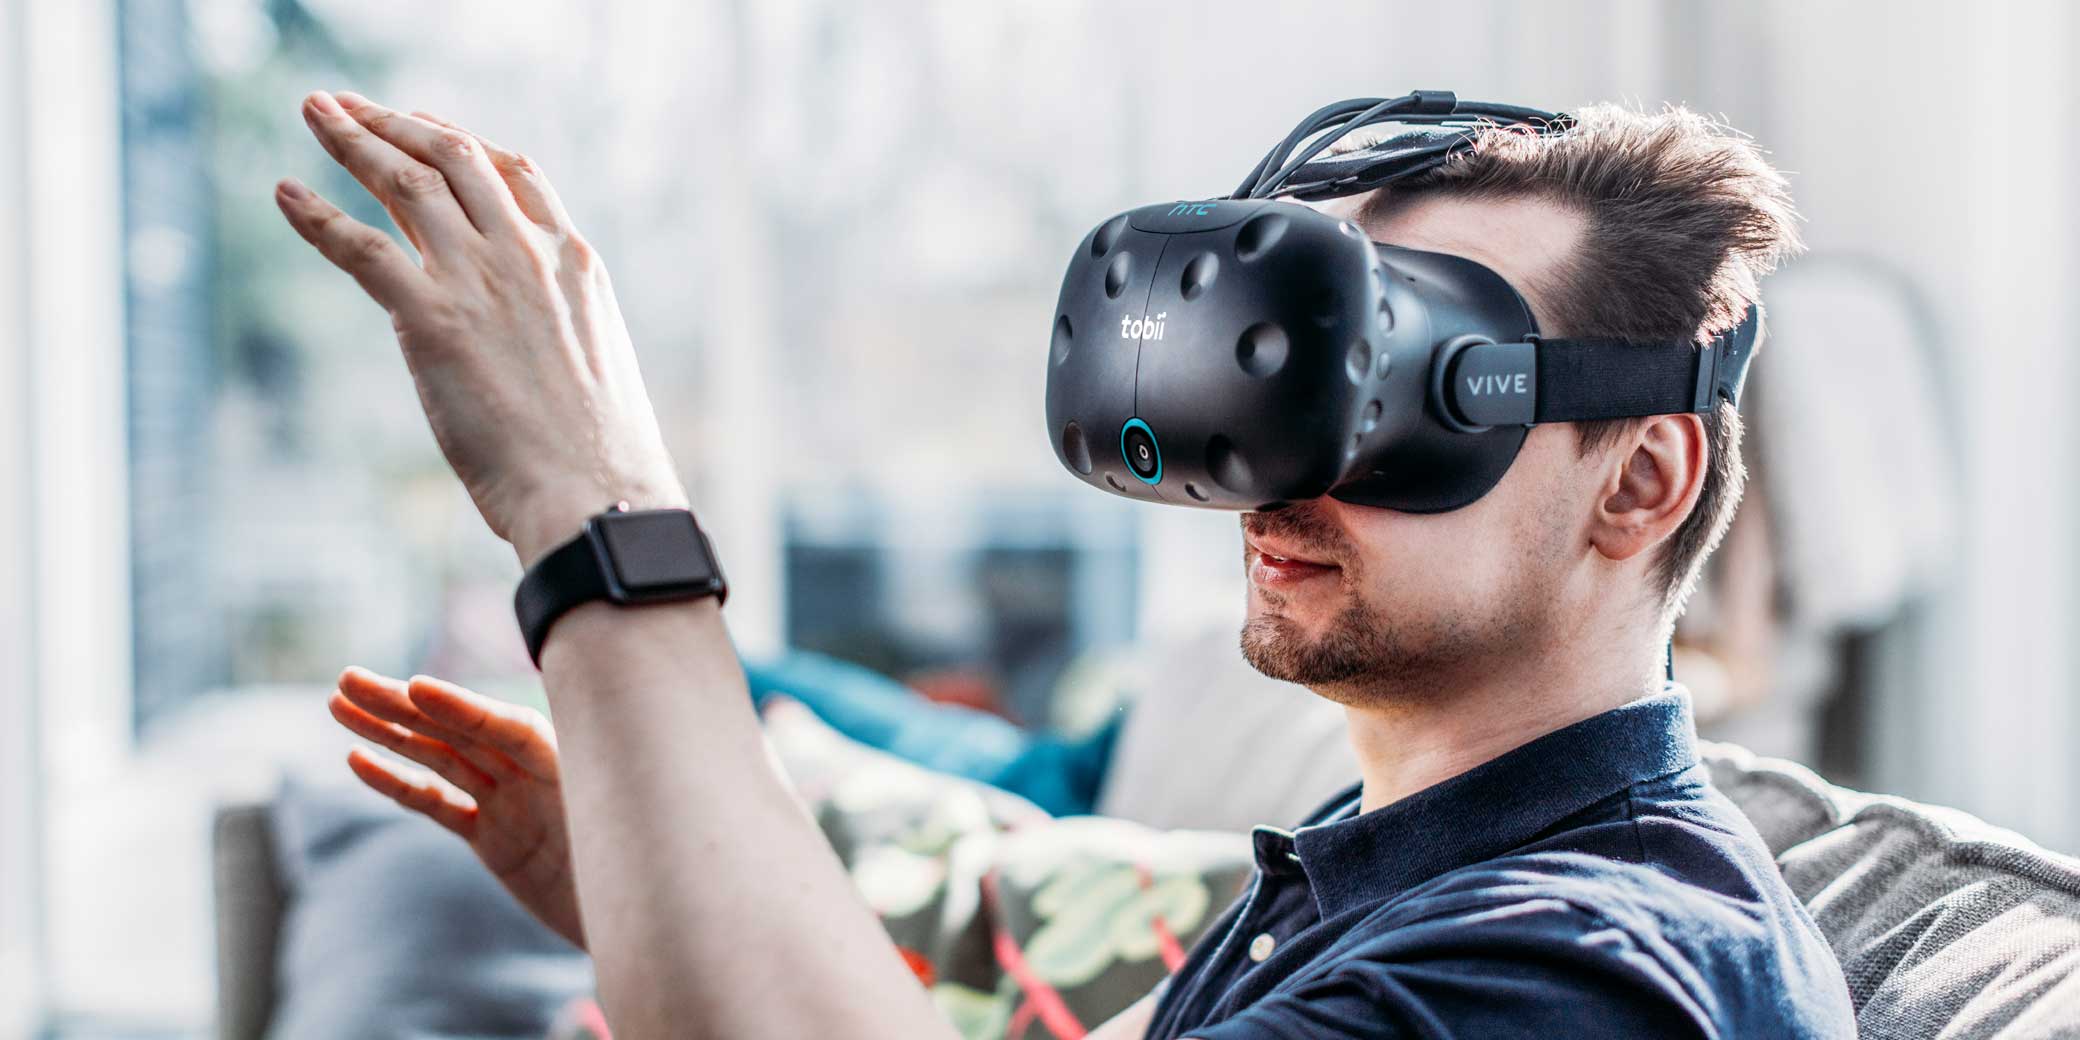 O vr. Бизнес очки виртуальной реальности. Очки виртуальной реальности для пилотов. Разработка виртуальной и дополненной реальности. VR В бизнесе.